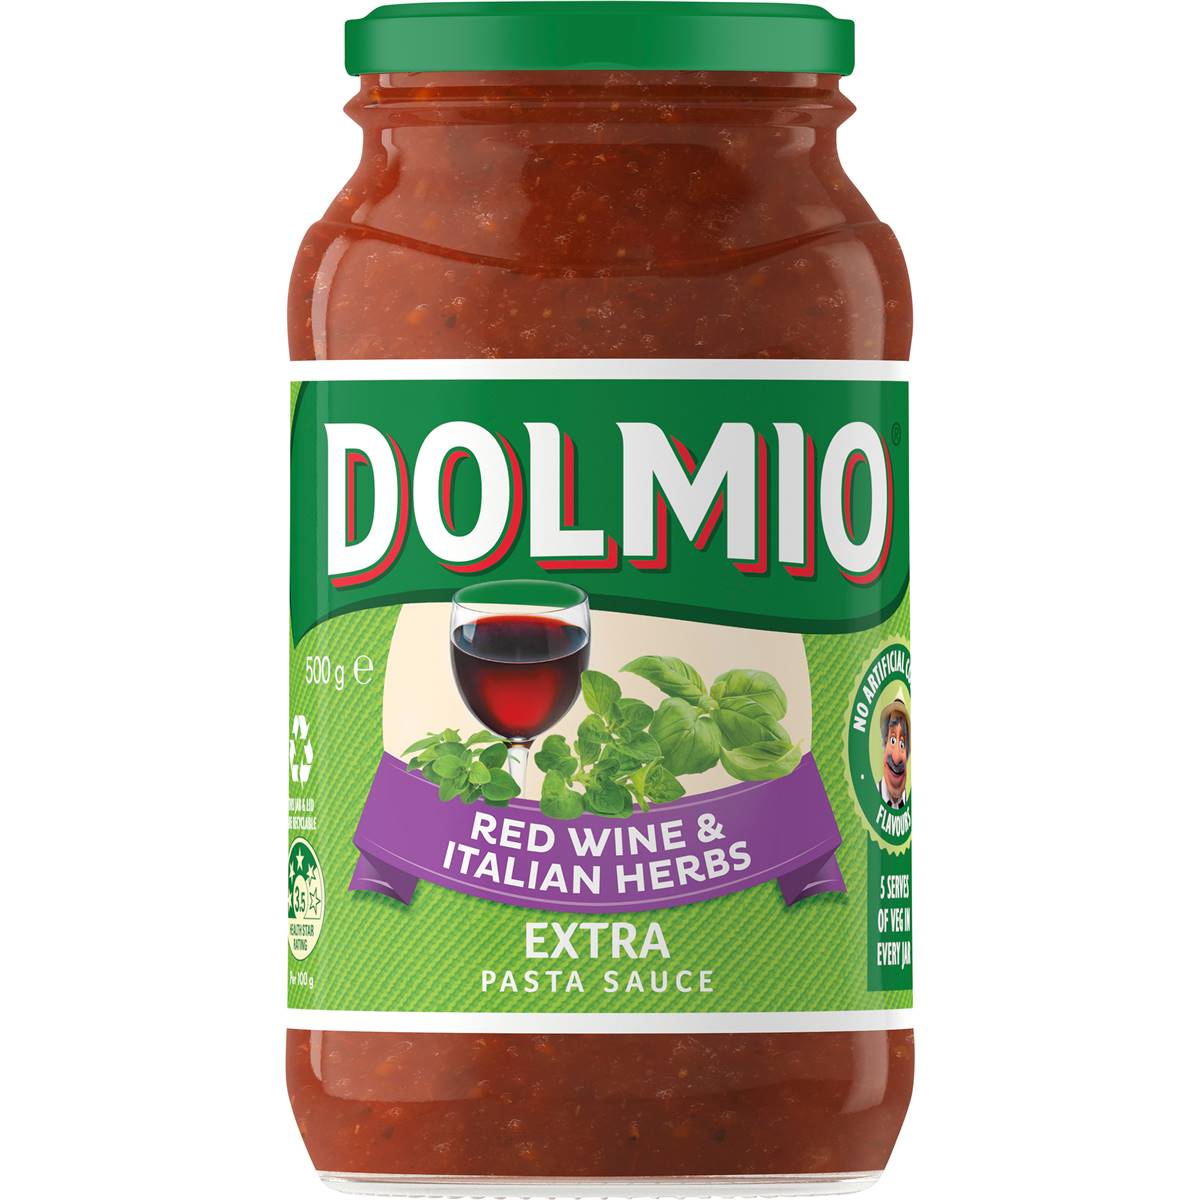 Dolmio Extra Pasta Sauce Red Wine & Italian Herbs 500g